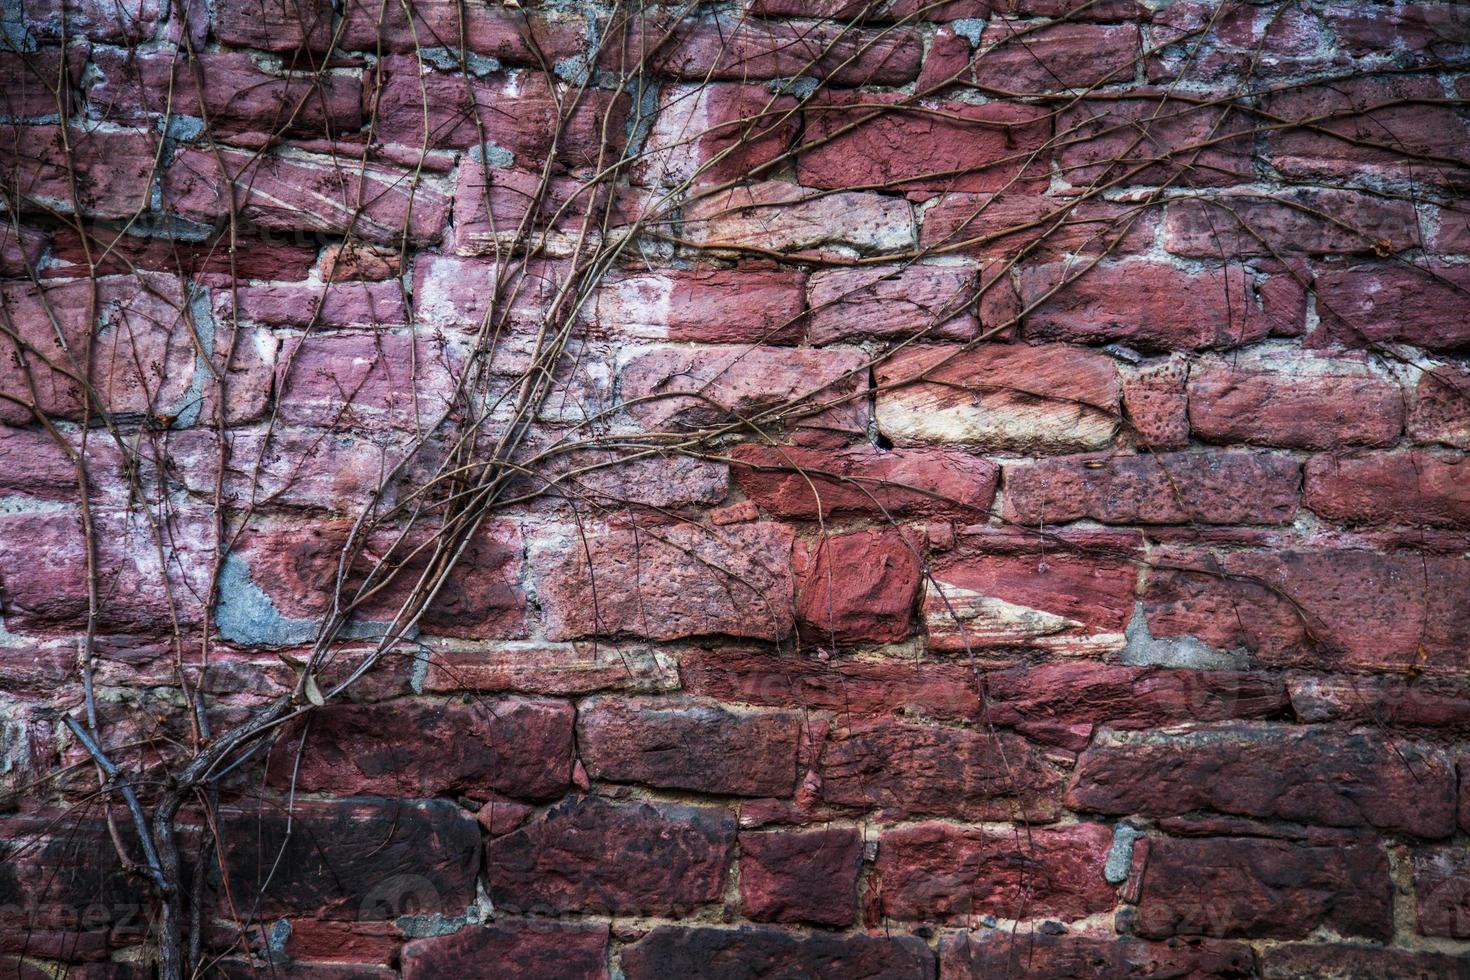 struttura del fondo del muro di mattoni di pietra del grunge foto